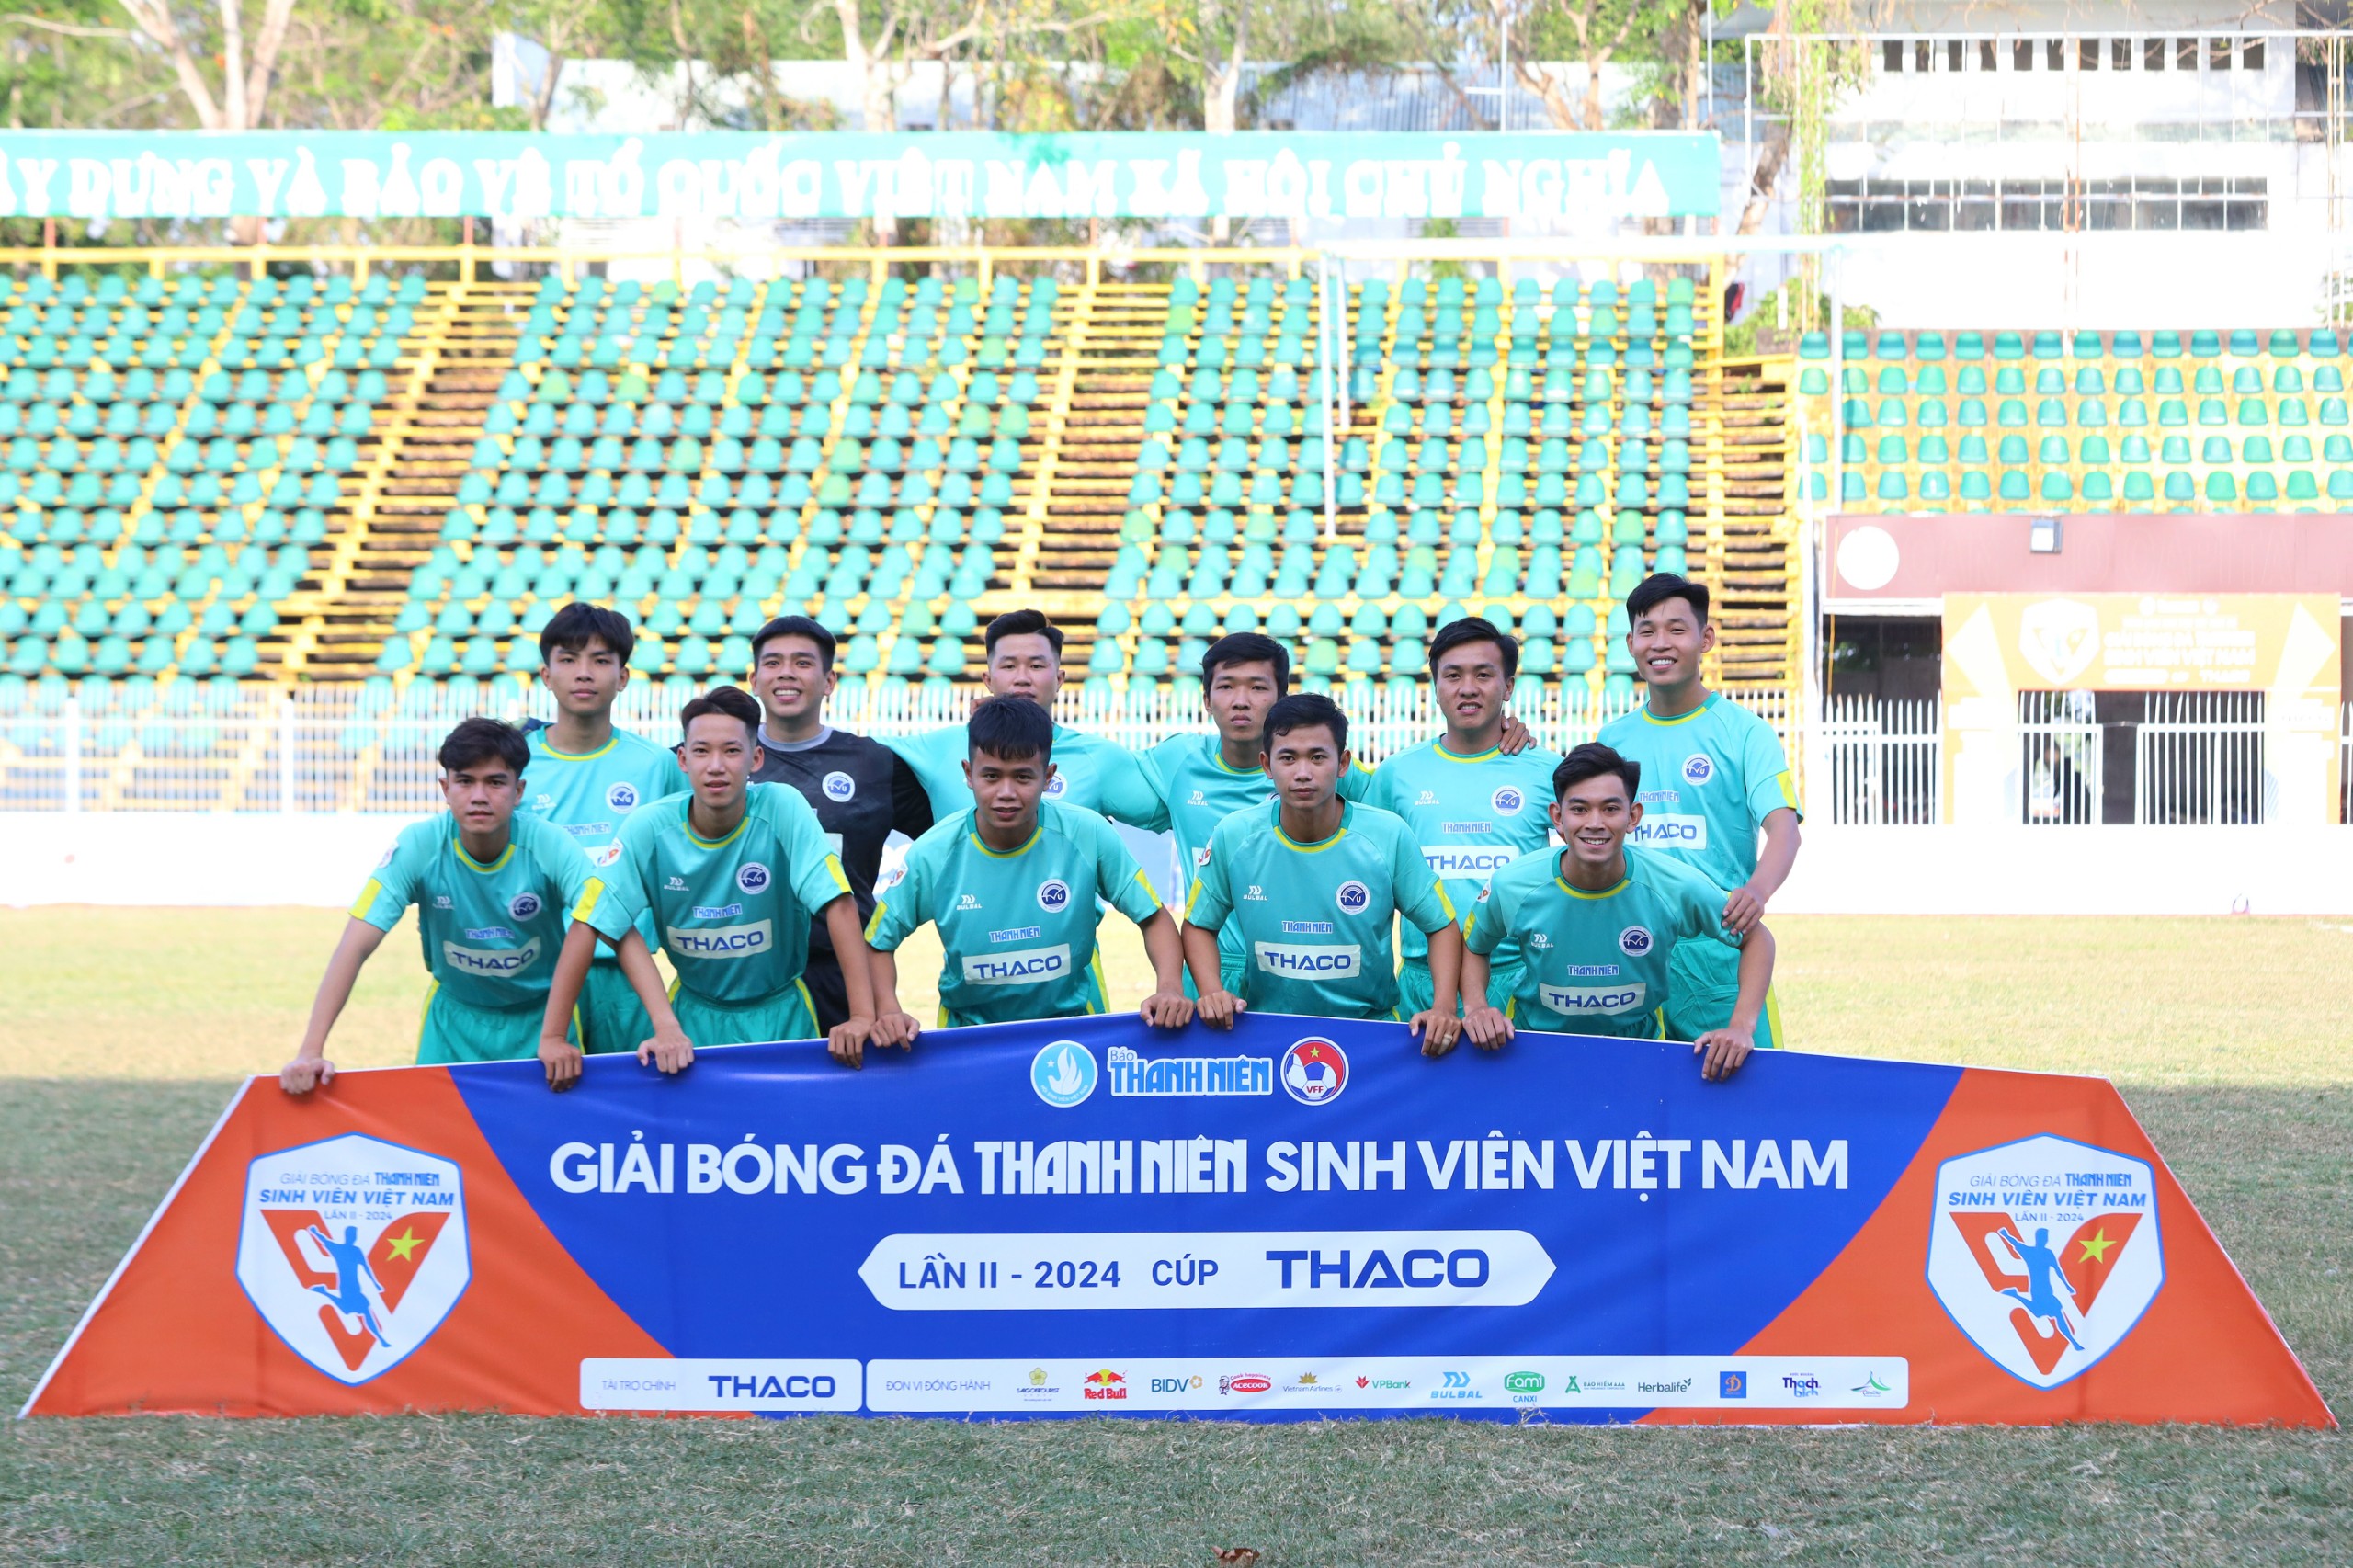 Trường Đại học Trà Vinh tham gia trận đấu khai mạc.